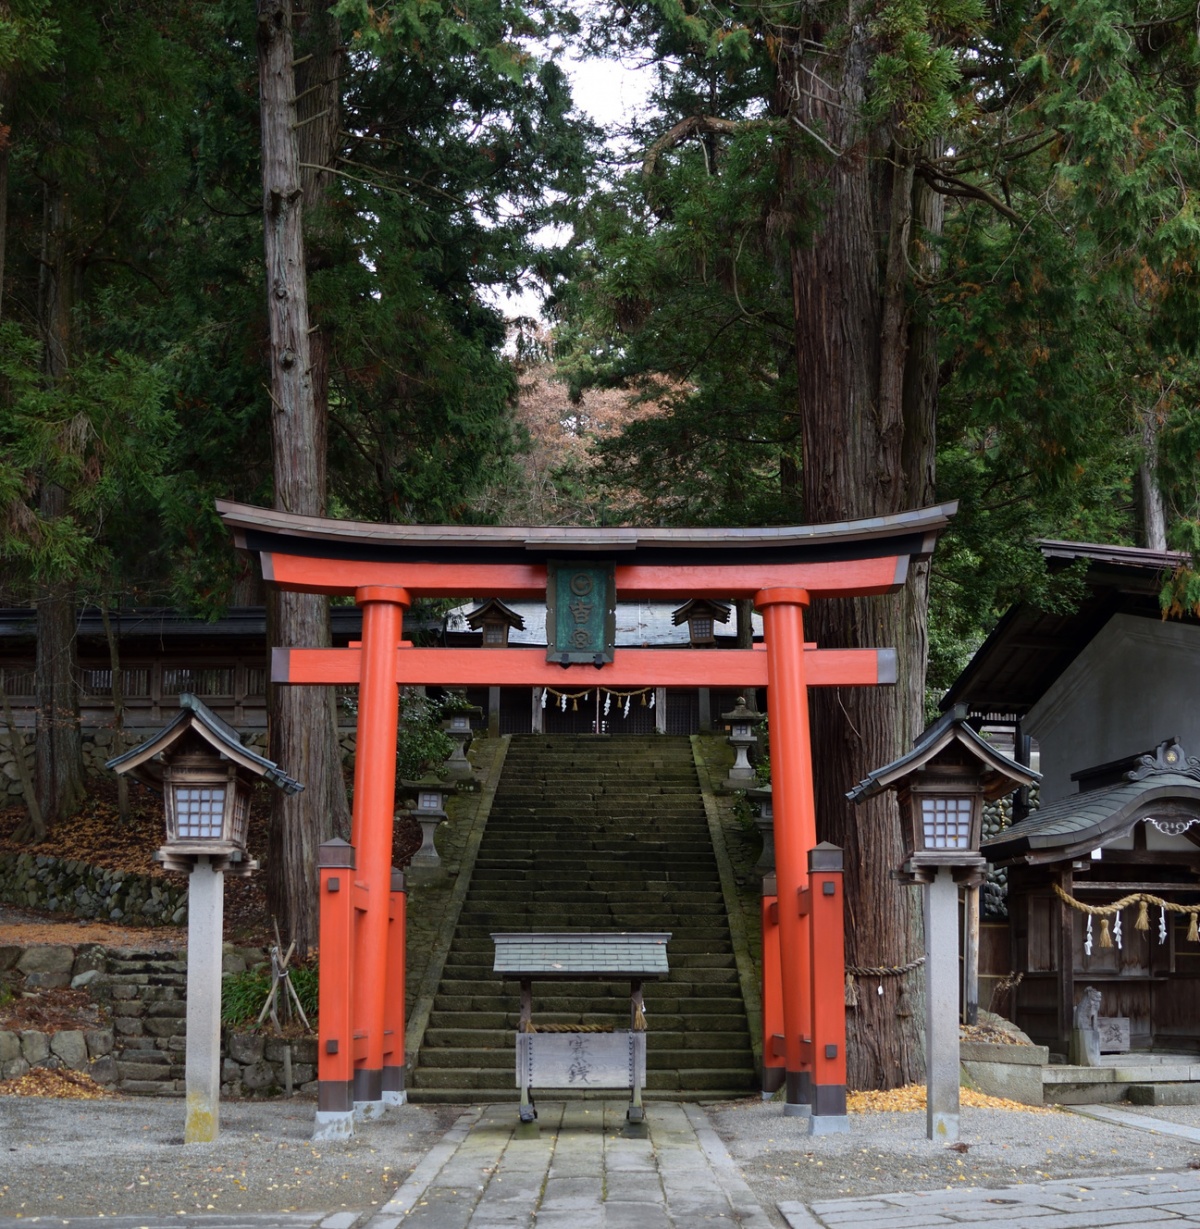 4. ศาลเจ้าฮิดะ-ซันโนกุ ฮิเอะ (Hida-sannogu Hie Shrine) ในจังหวัดกิฟุ (Gifu) จากเรื่อง Your Name